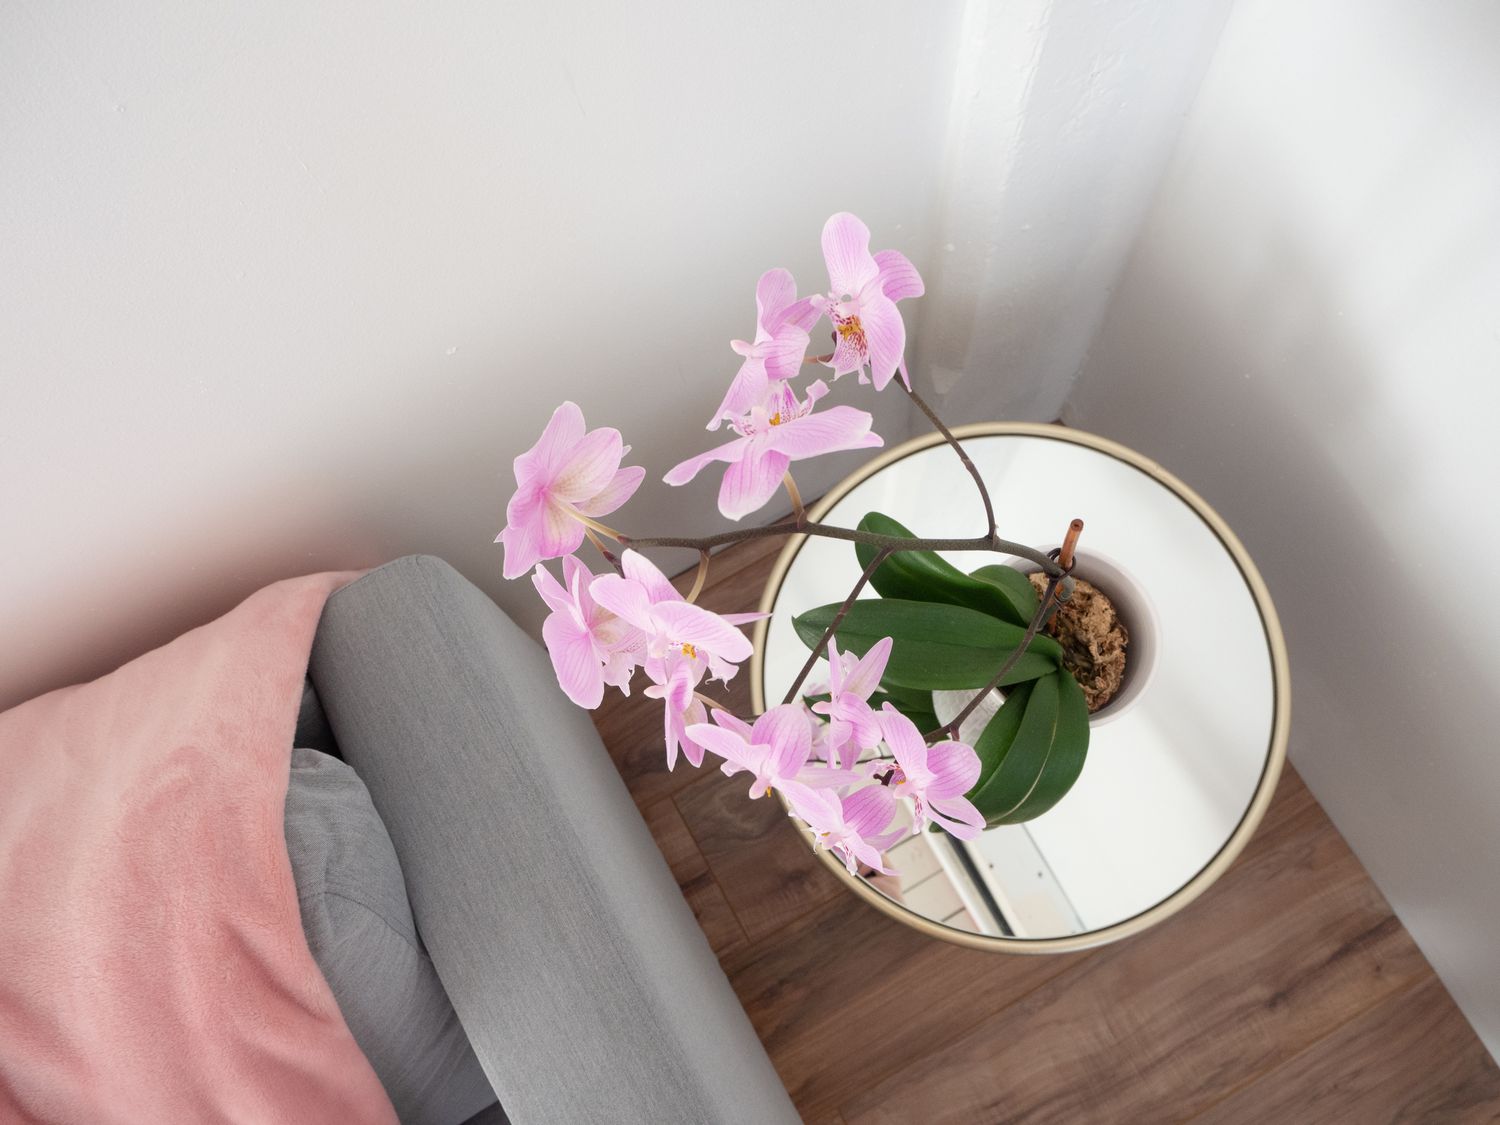 eine Orchidee wächst im Haus